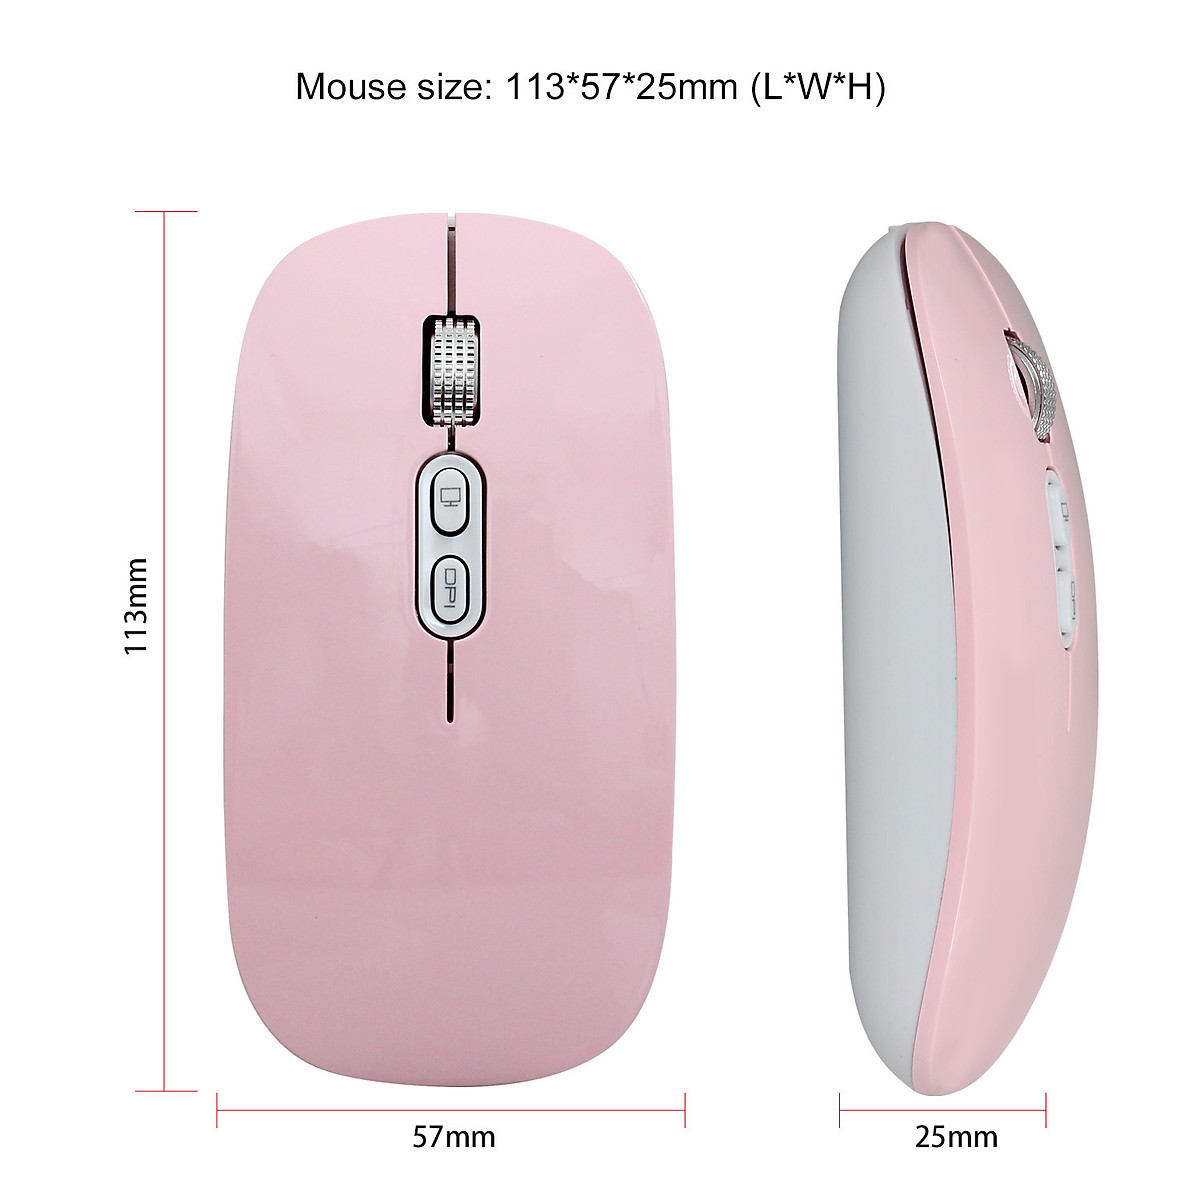 Chuột không dây Pix-link  M103 hồng 2.4G sạc điện chống ồn khoảng cách tín hiệu 10m - Hàng chính hãng / Hàng nhập khẩu